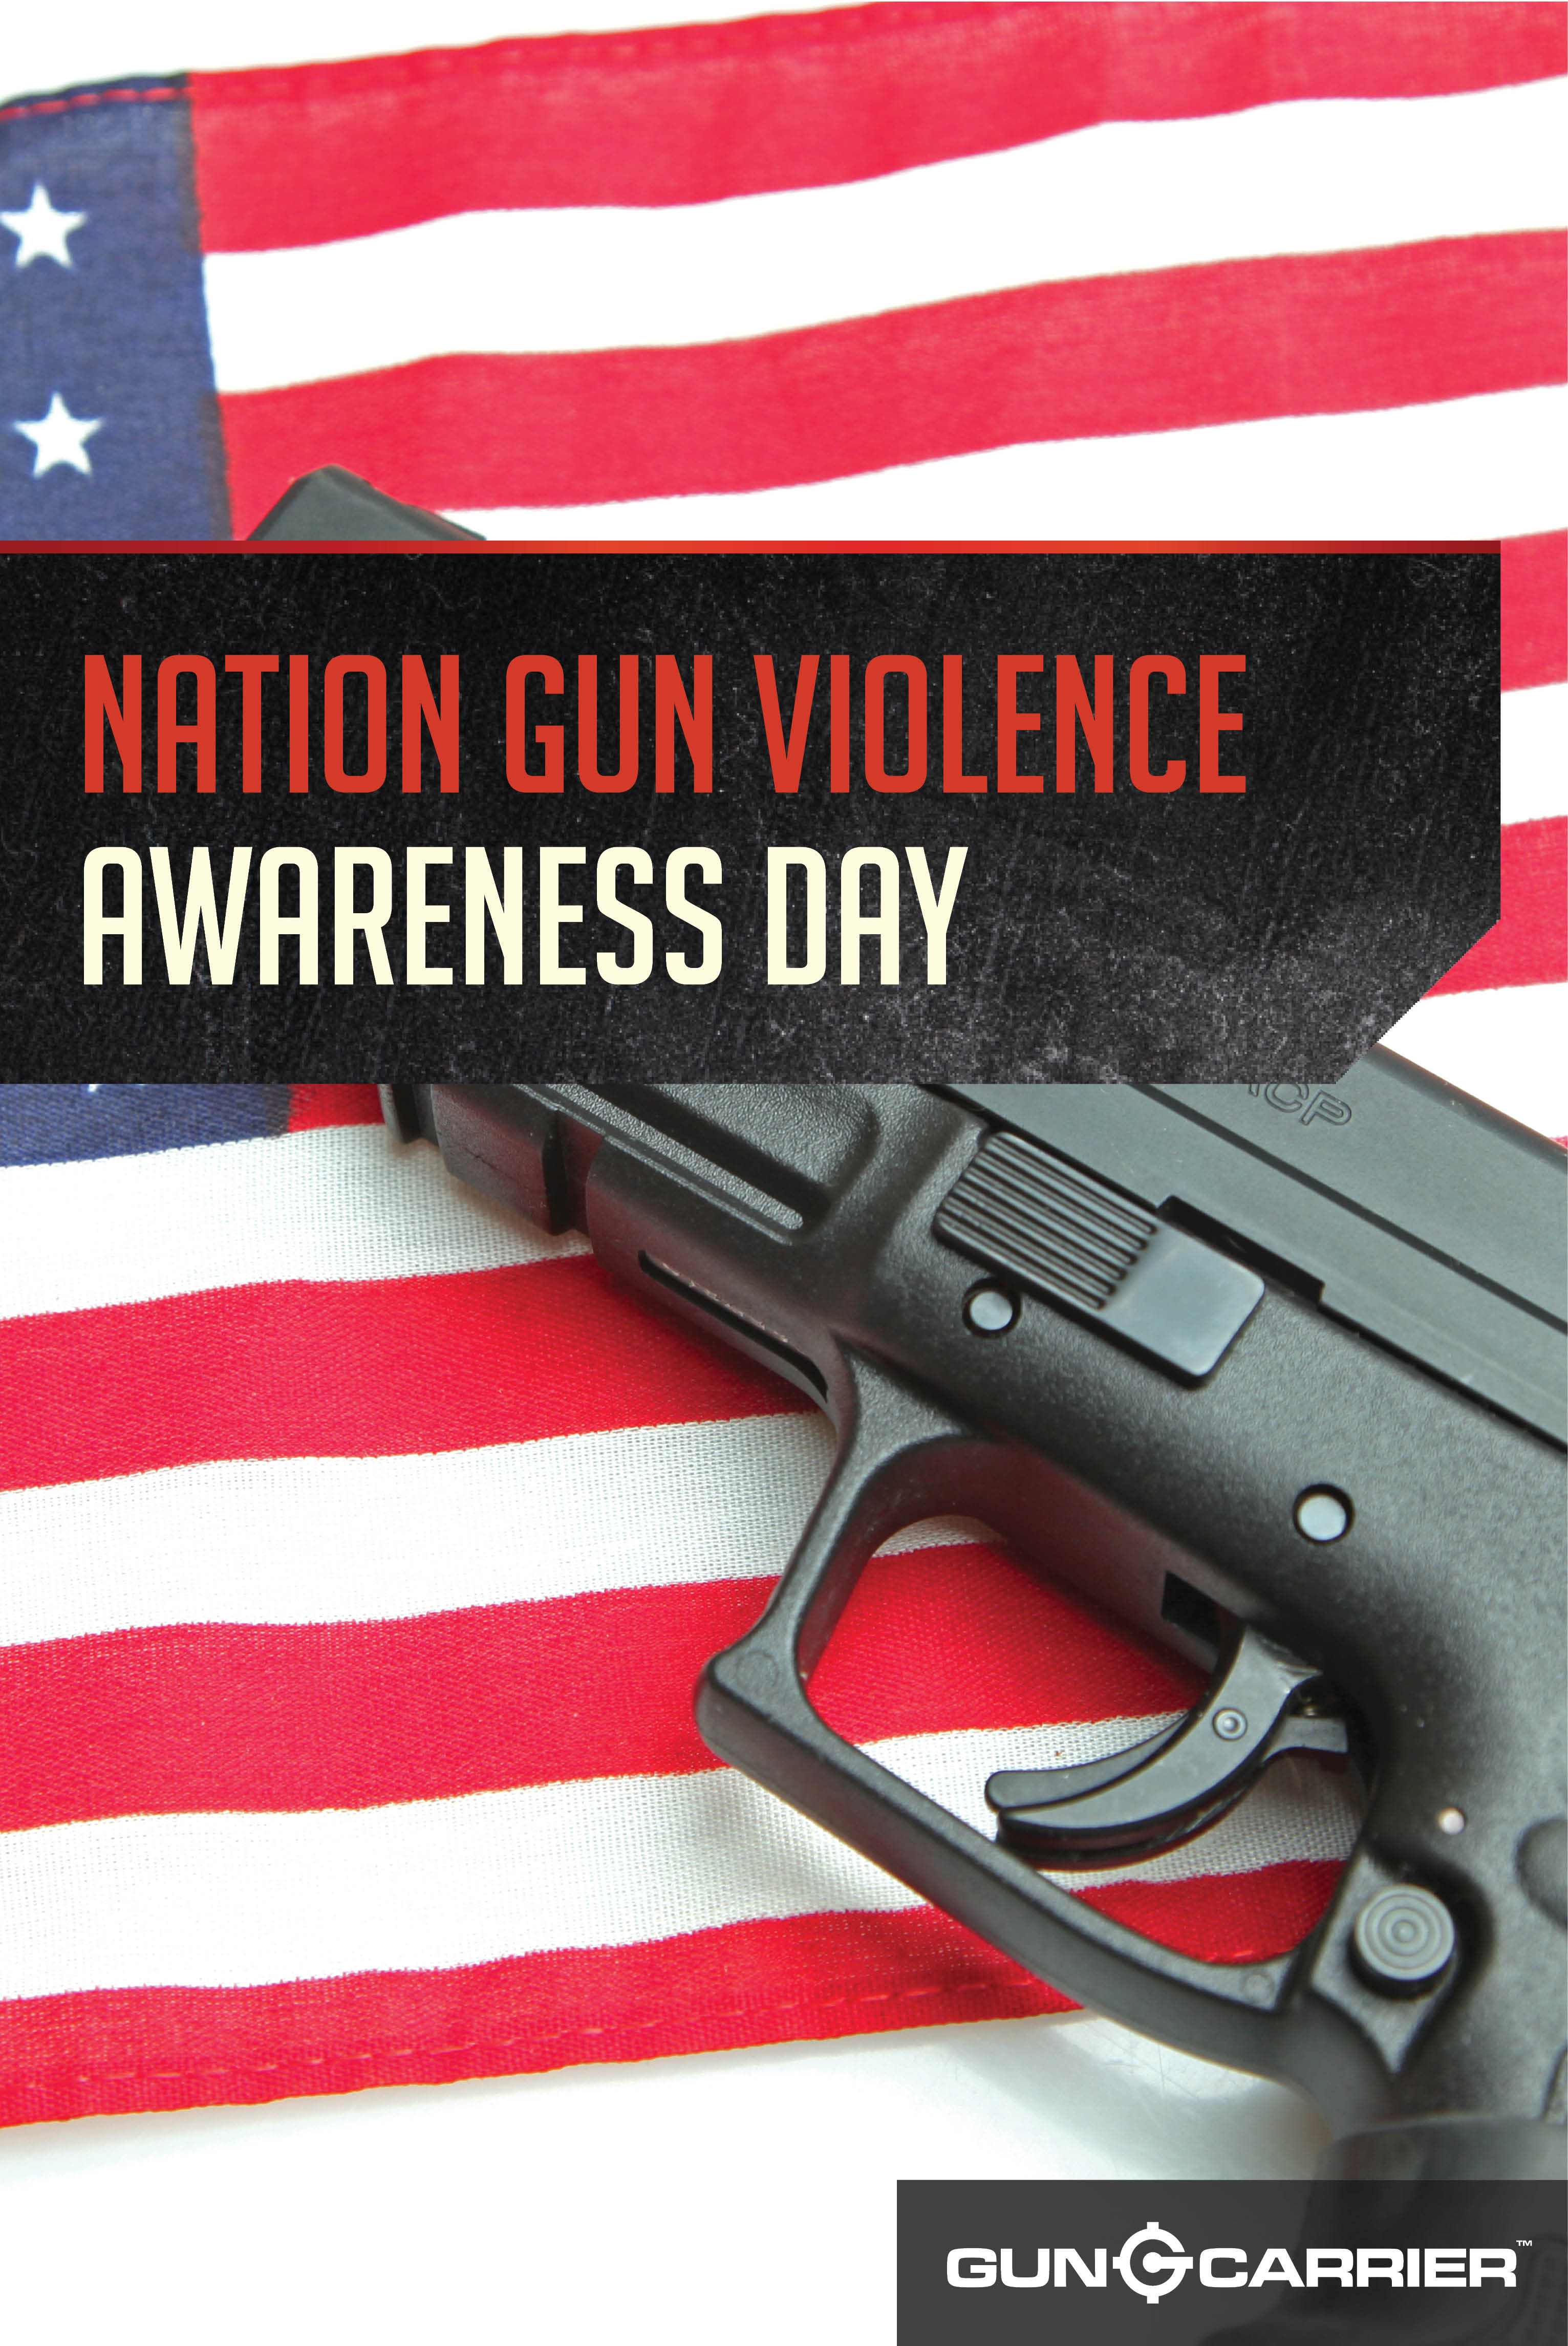 National Gun Violence Awareness day